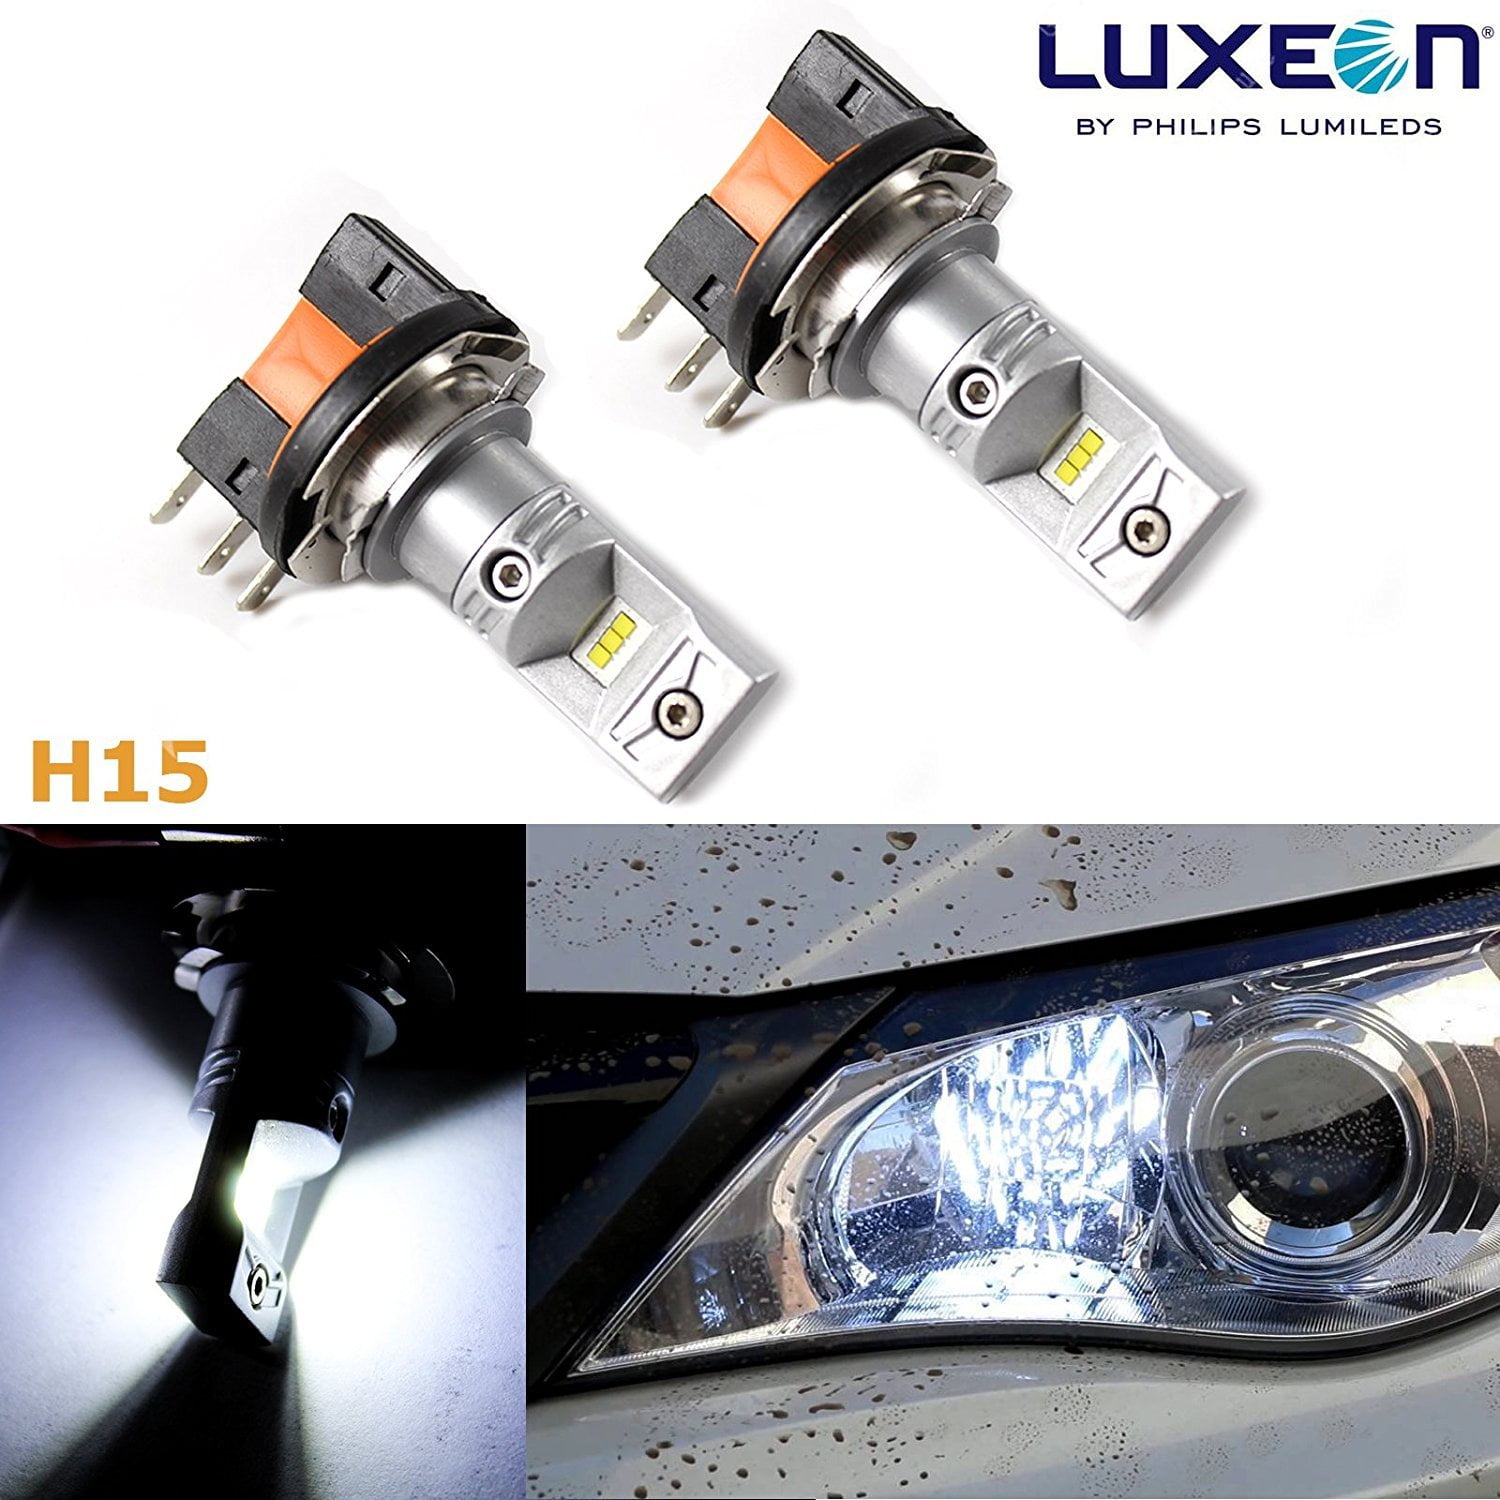 H15 LED Bulb fit for Mercedes DRL Daytime Running Light 6000k White 100W 